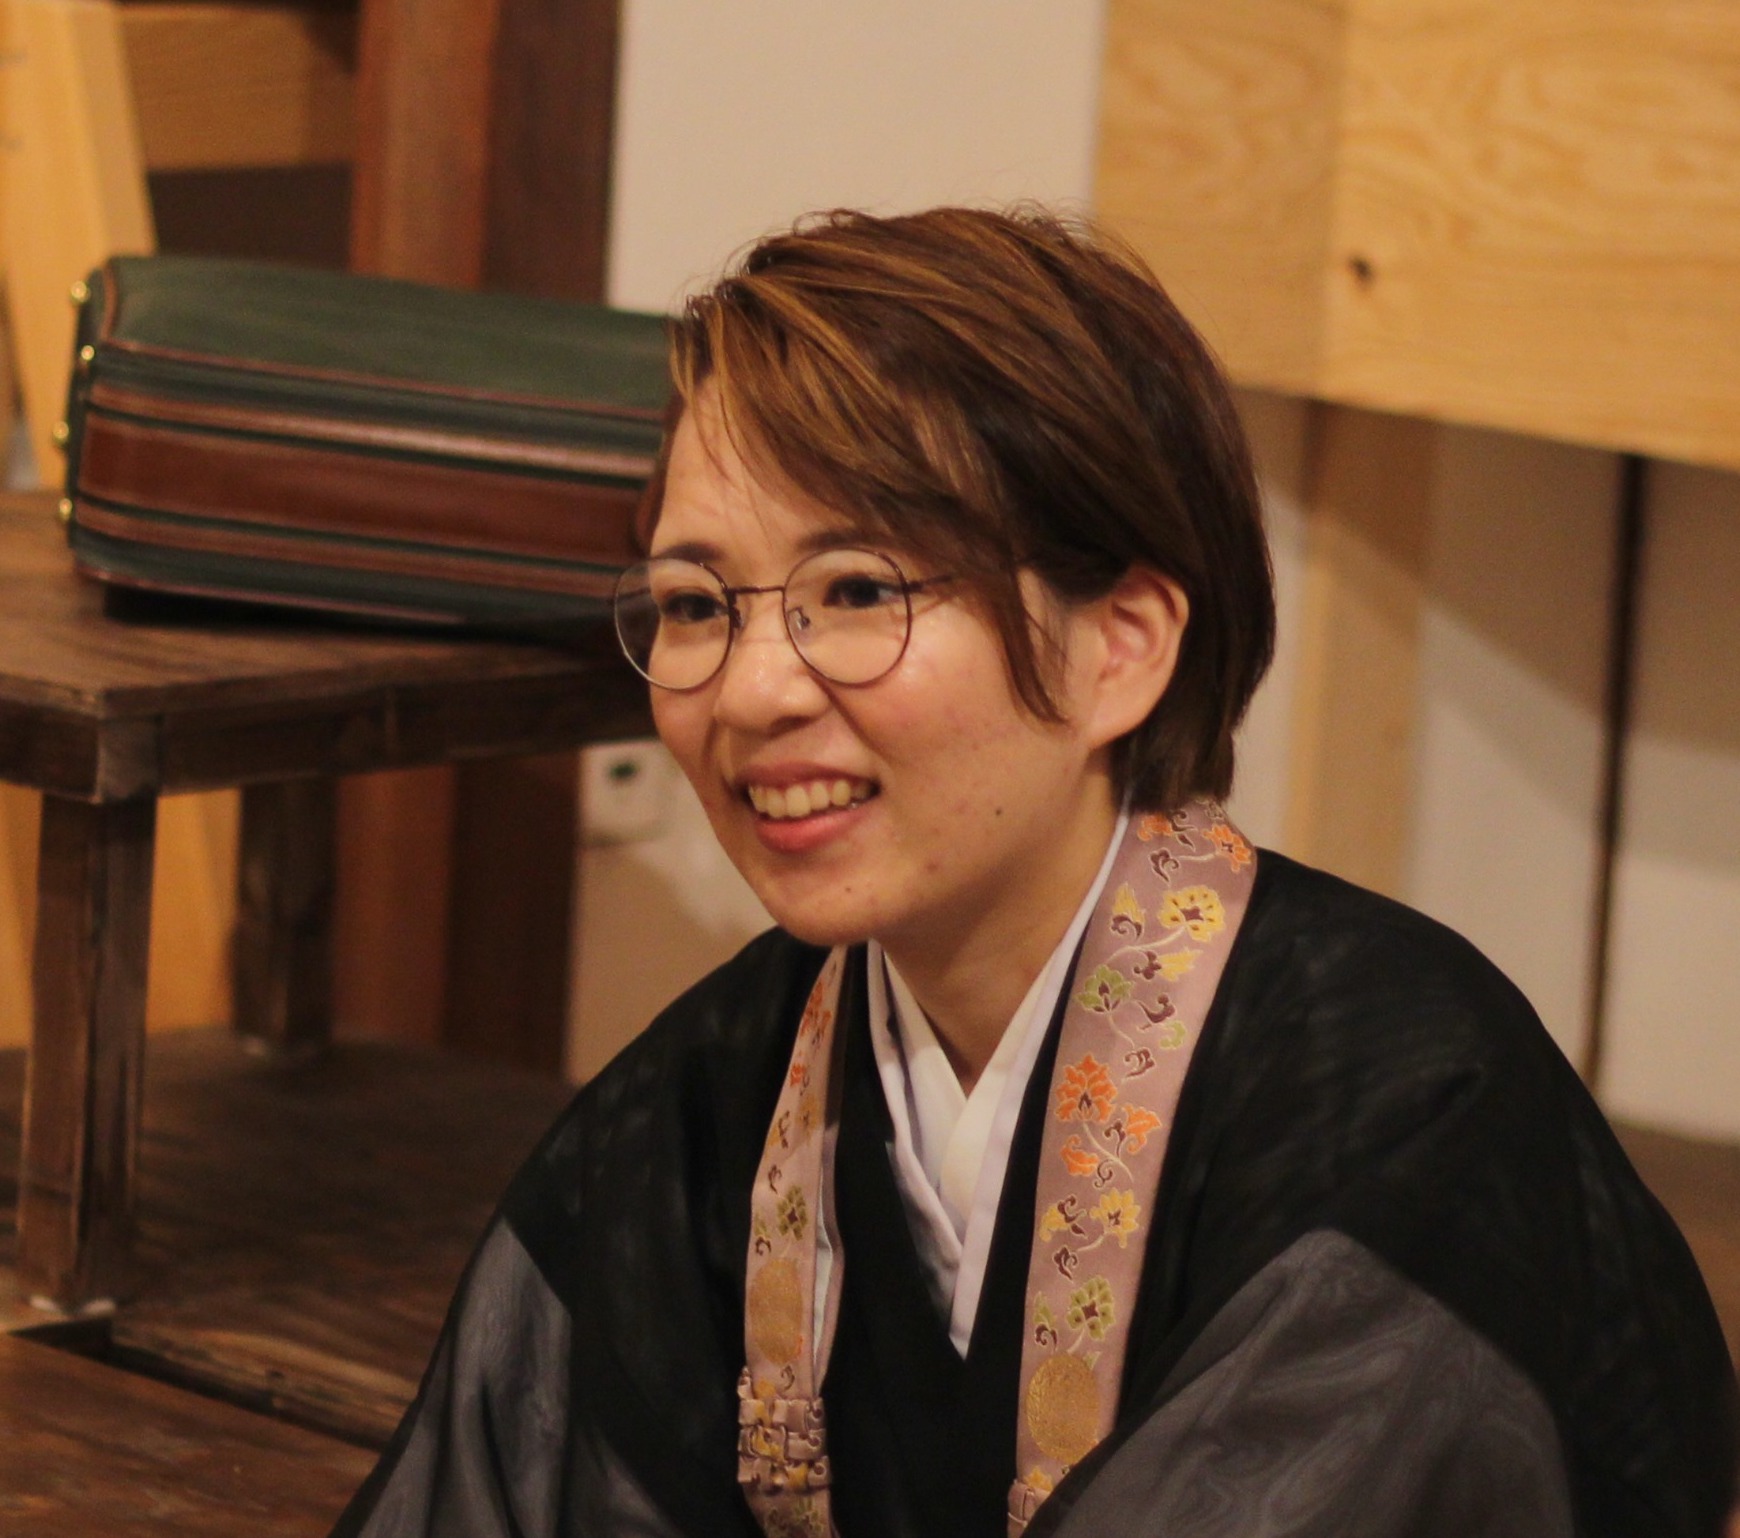 若き女性僧侶と過ごす 与え合う 時間 仲秋の坊主喫茶 栞や Shioriya